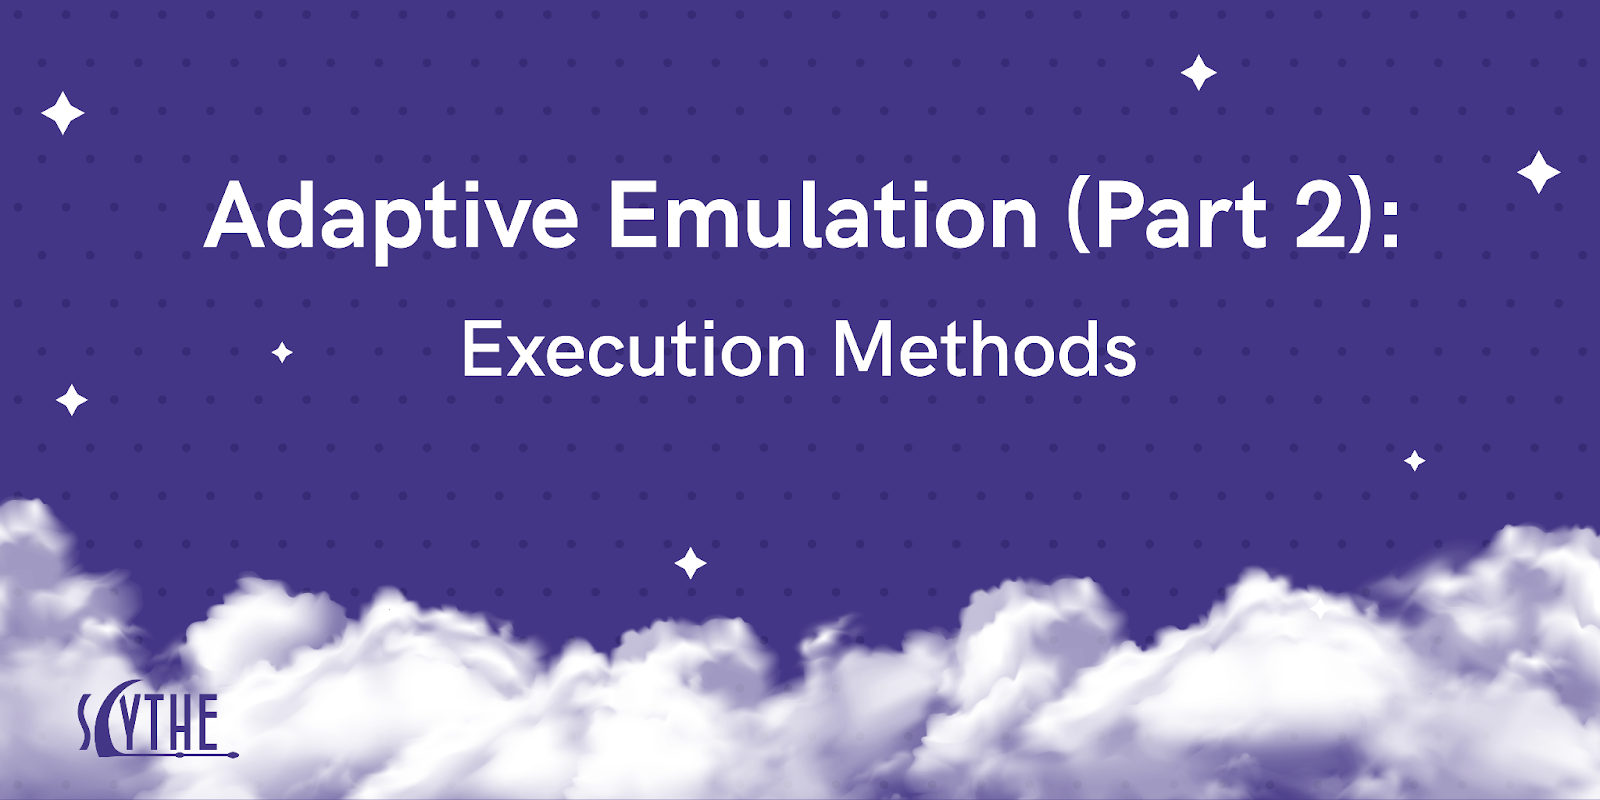 Adaptive Emulation (Part 2): Execution Methods